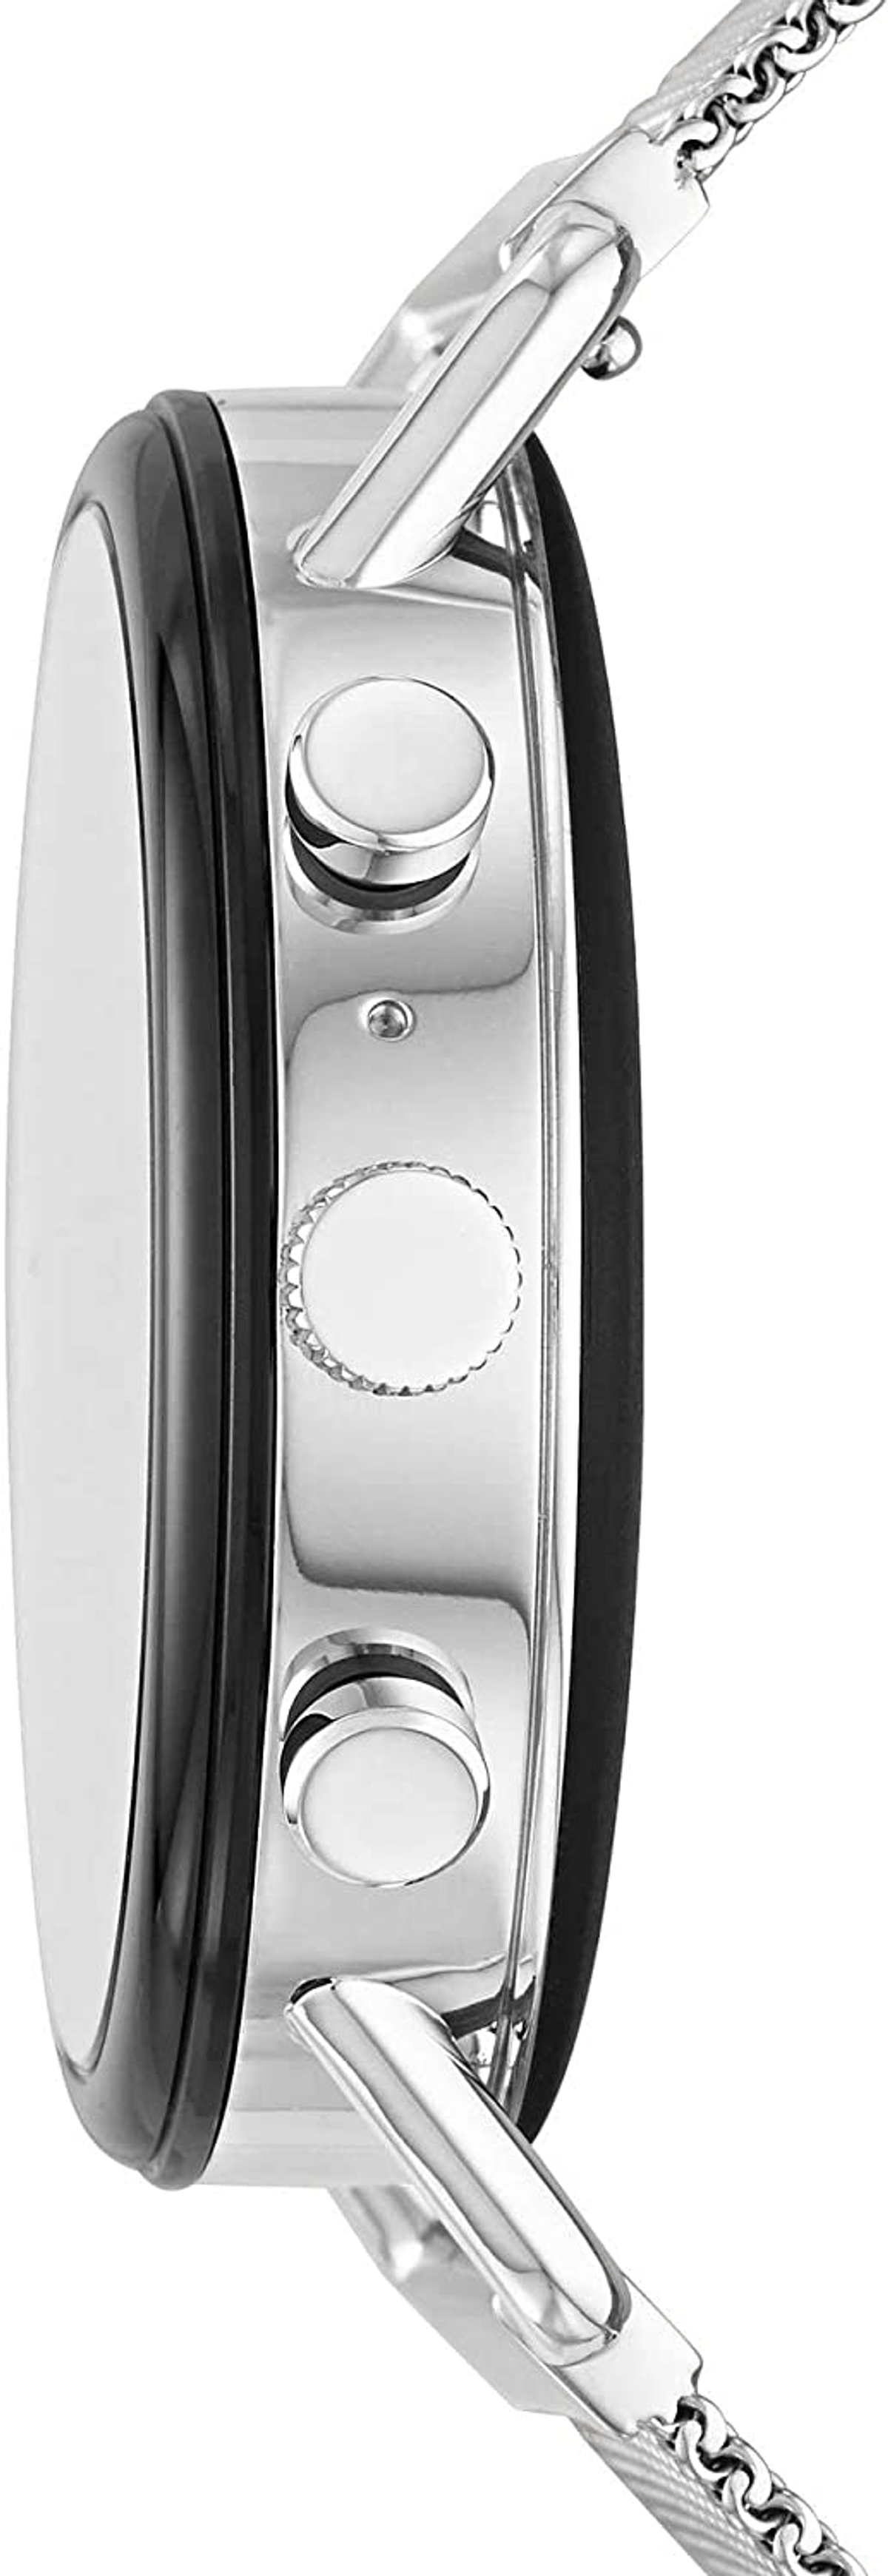 SKT5102 mm, Edelstahl Skagen Smartwatch silicone, 185 SKAGEN Smartwatch Silver/Black